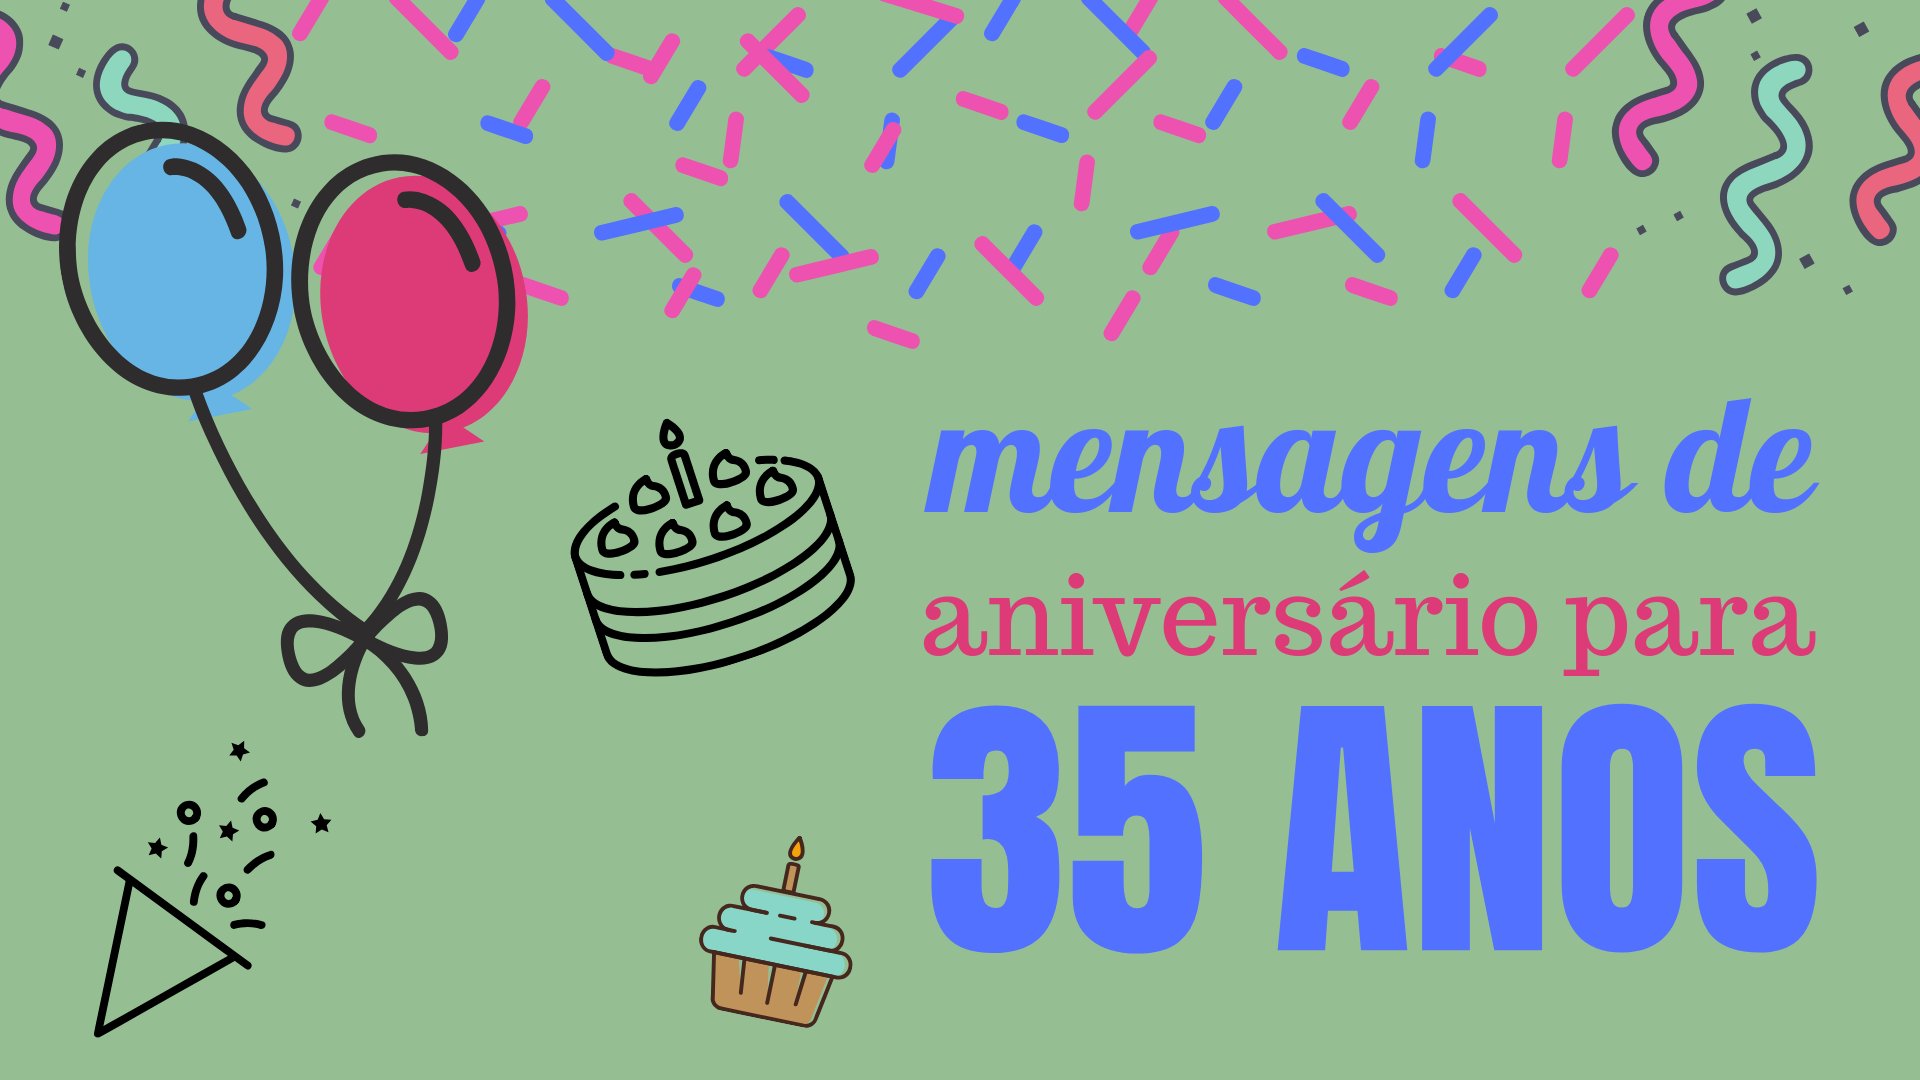 Mensagens de Aniversário para 35 anos